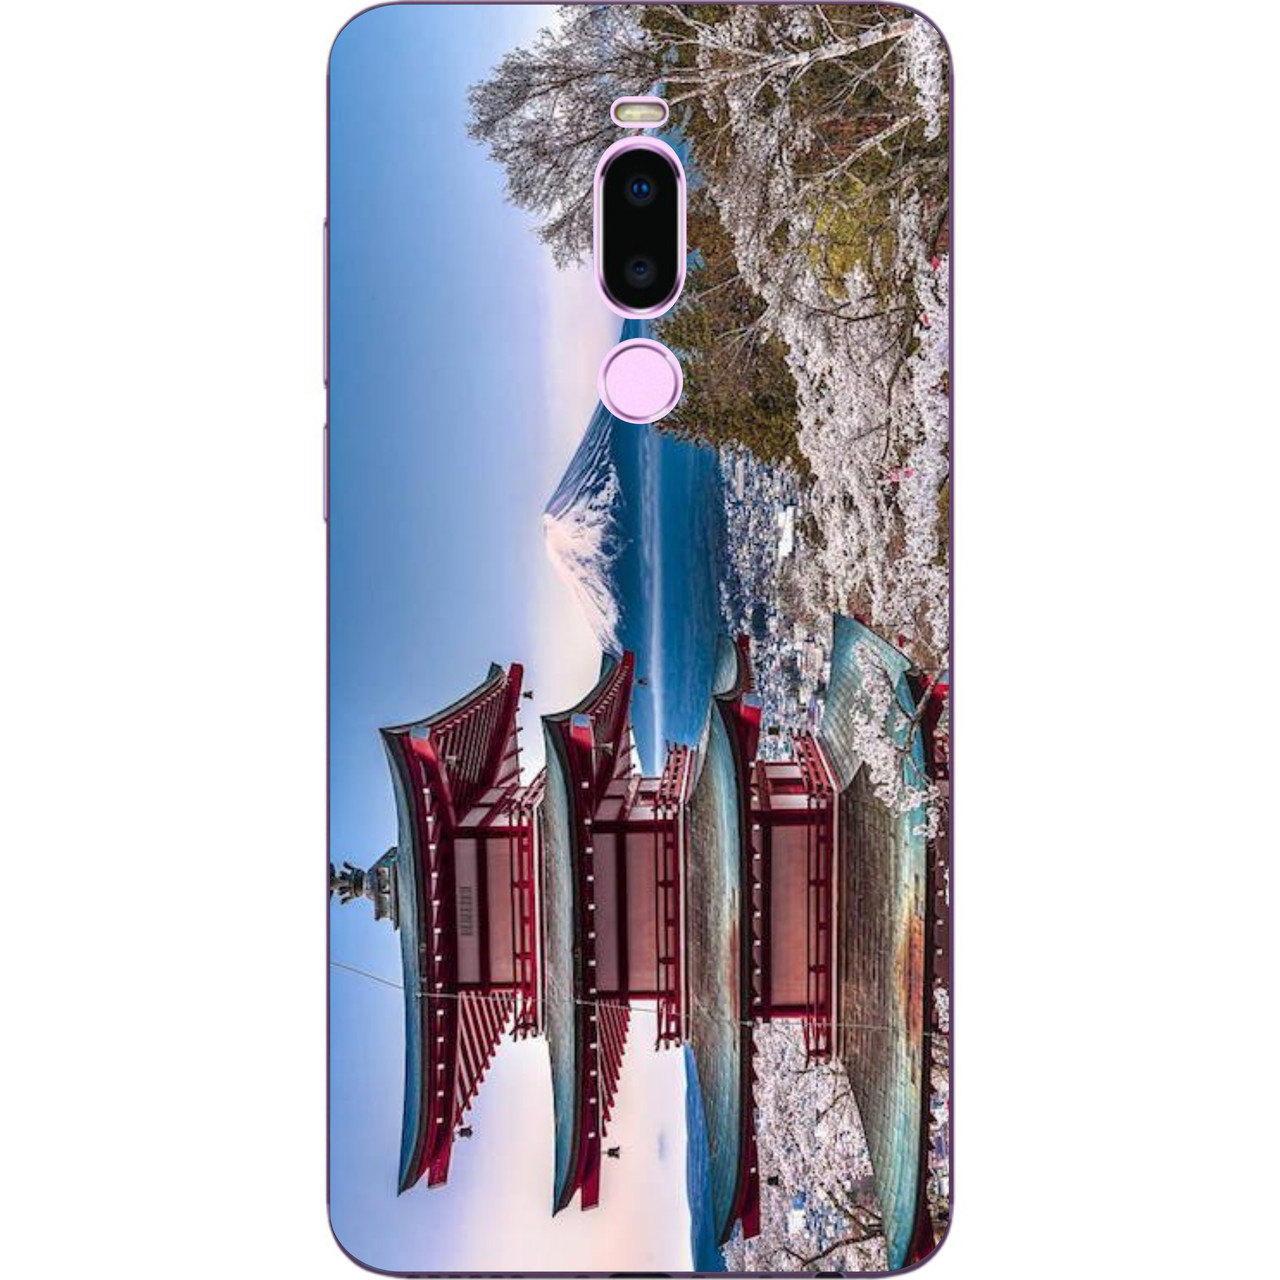 

Чехол с картинкой силиконовый для Meizu M8 Пекин, Разные цвета